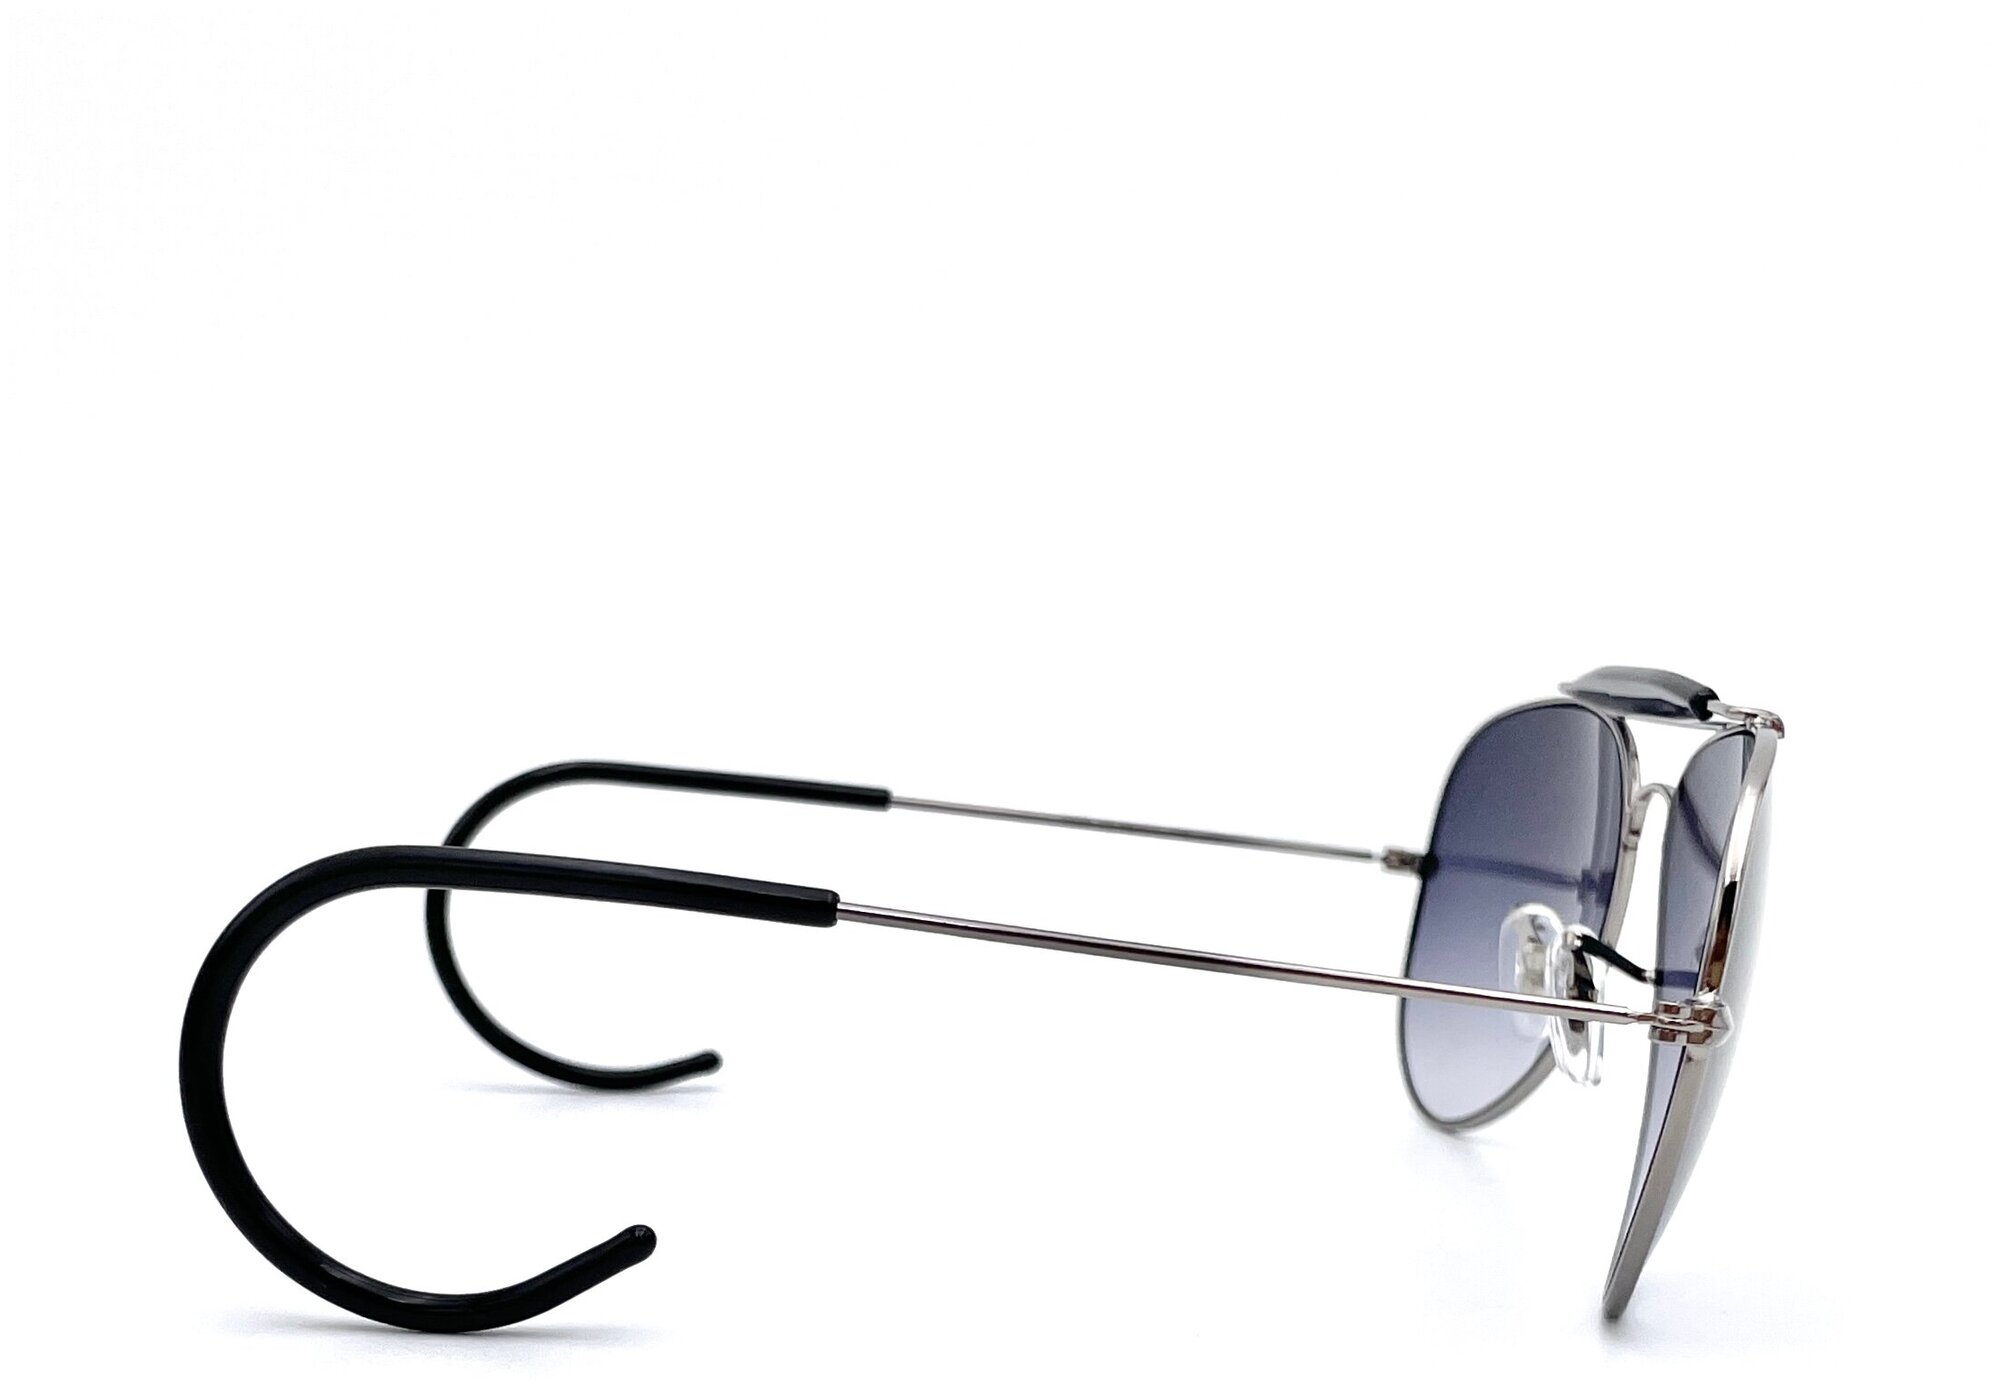 Солнцезащитные очки Smakhtin'S eyewear & accessories